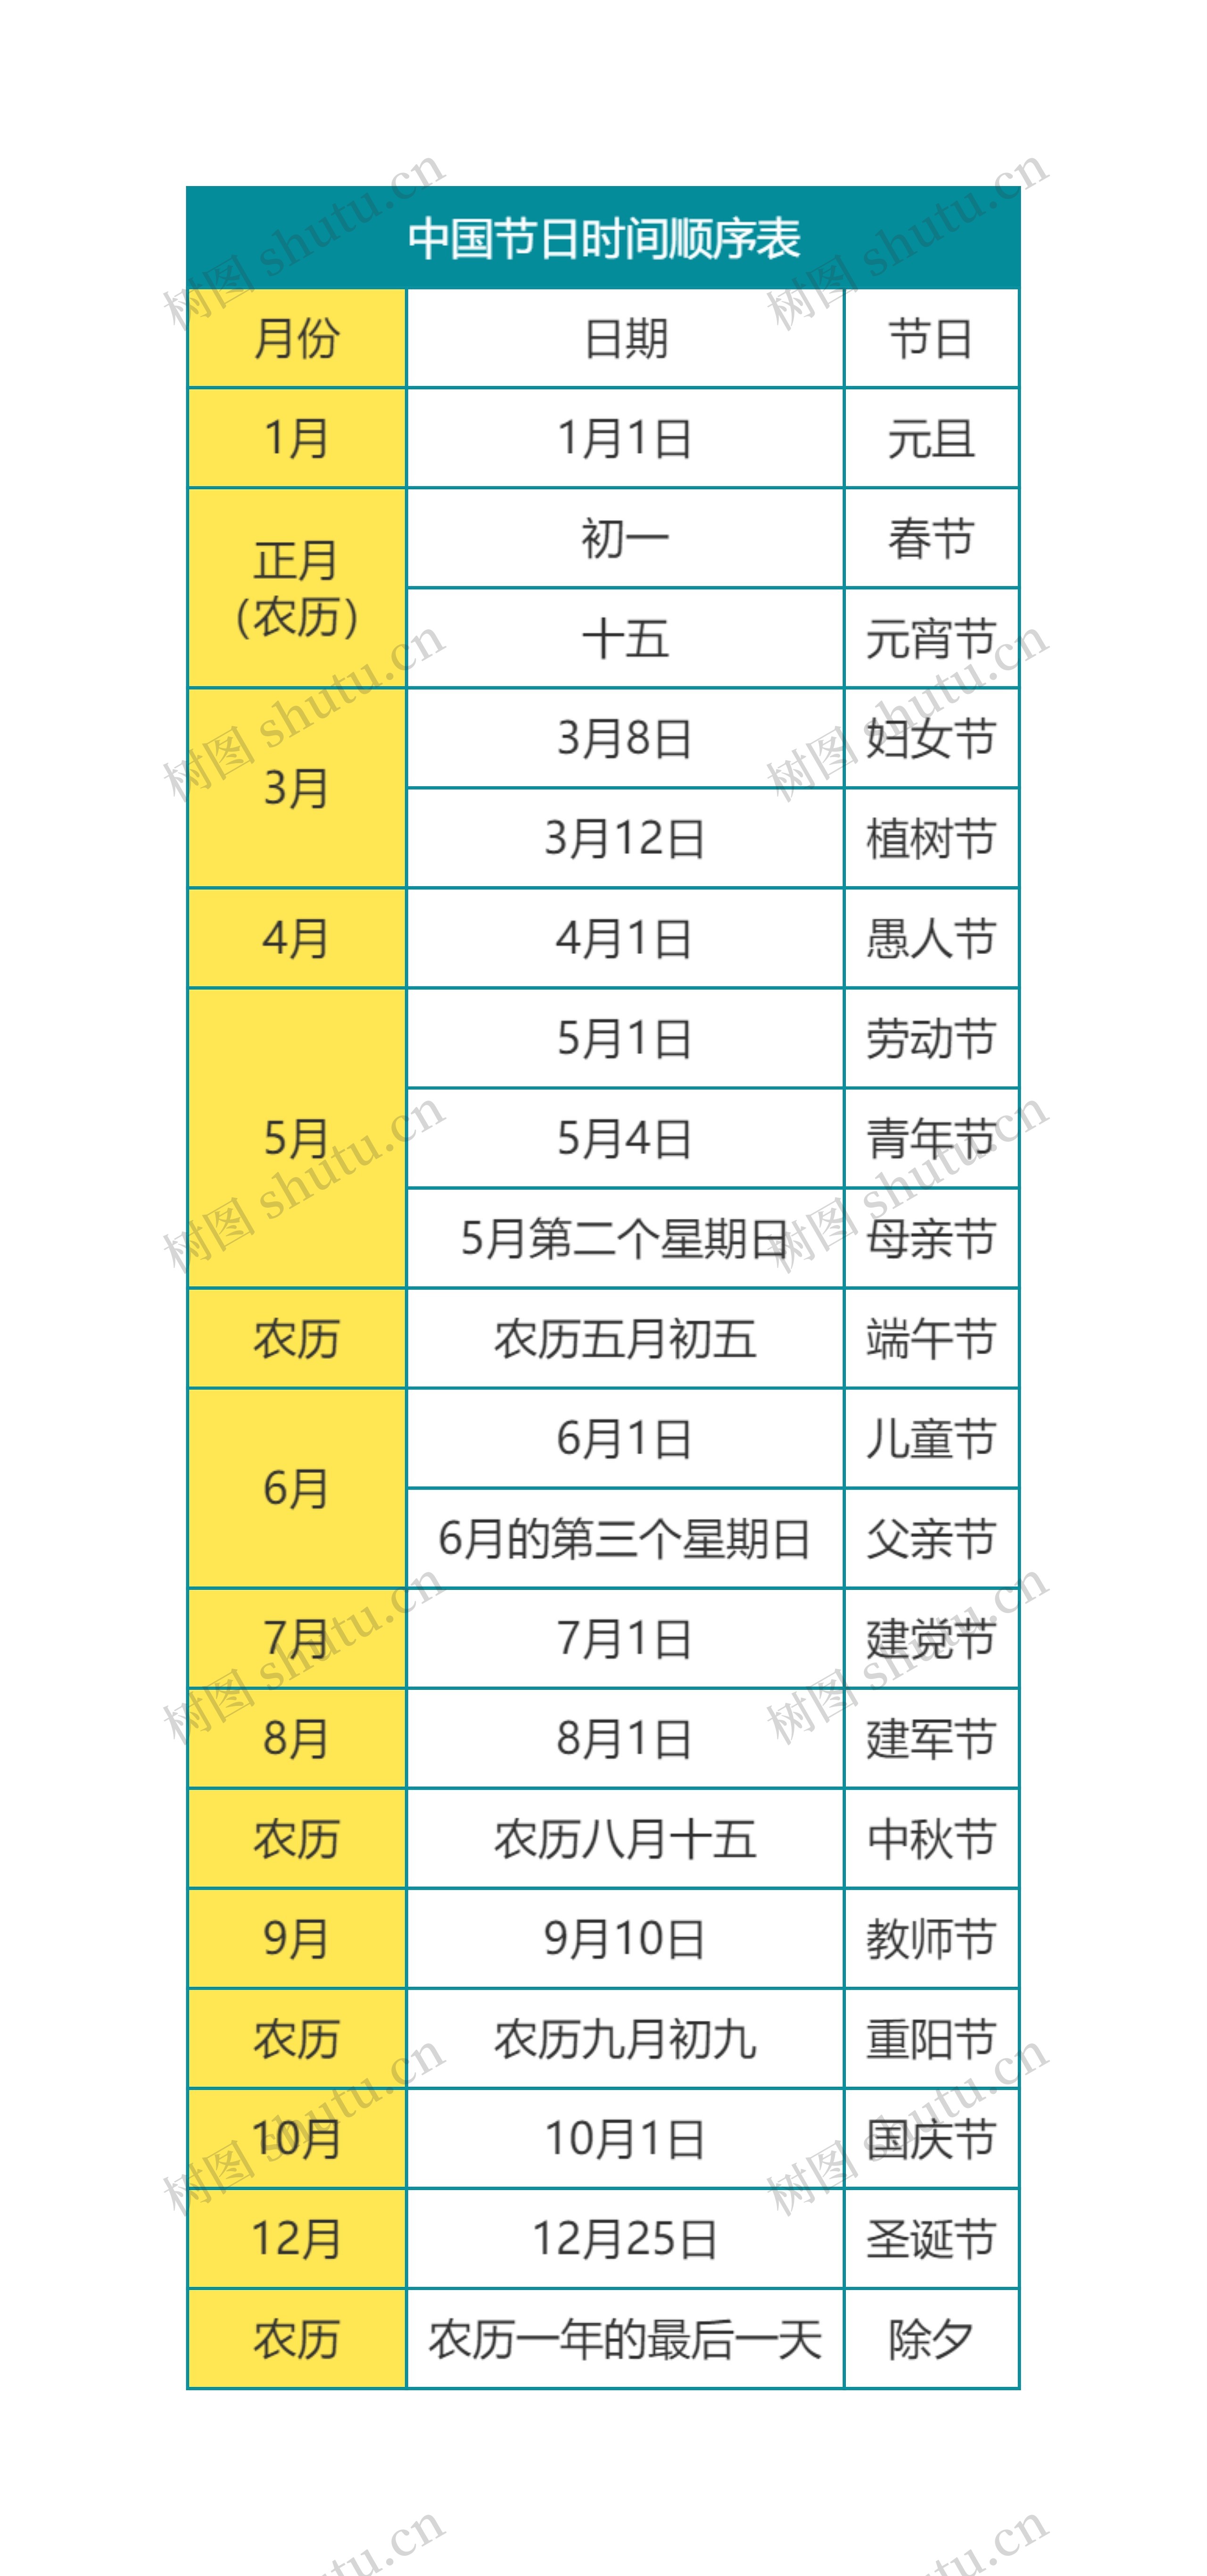 中国节日时间顺序表